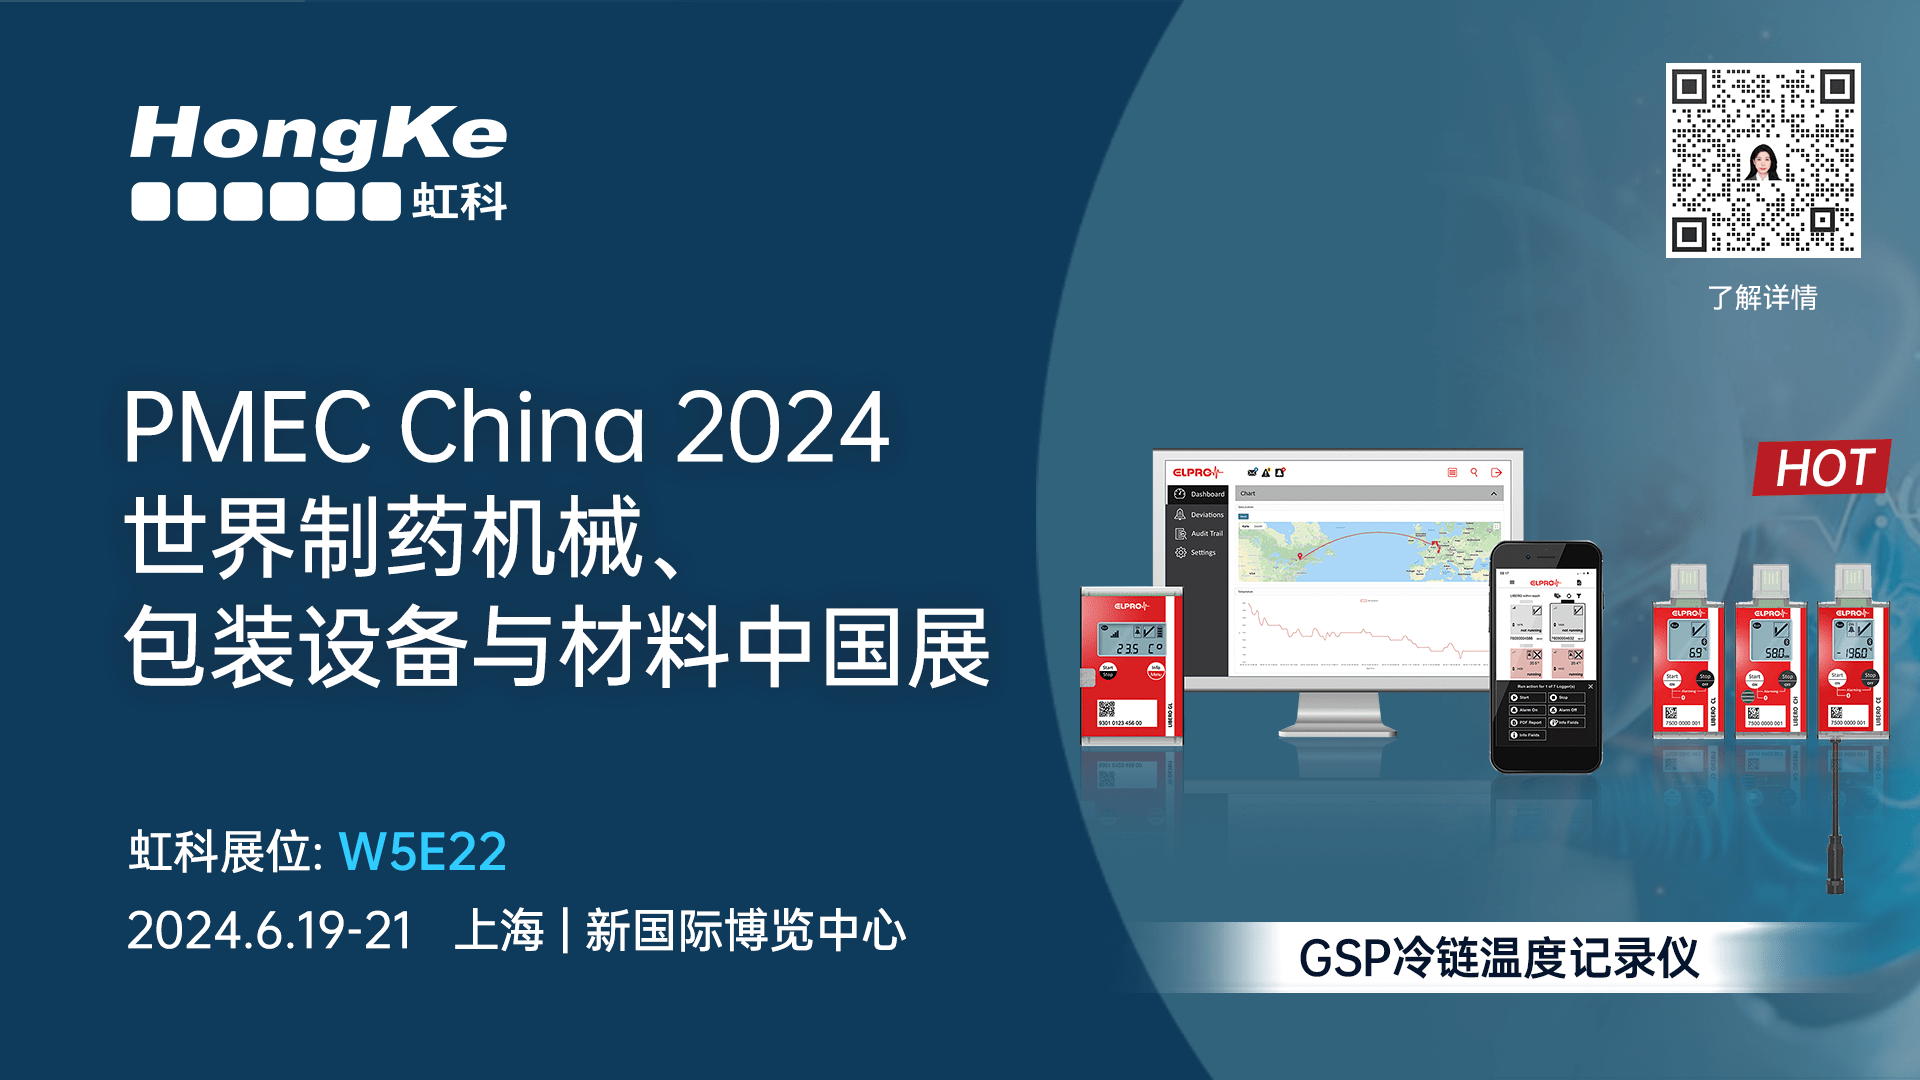 展会邀请 | 点成虹科诚邀您6月19-21日于上海参加世界制药机械、包装设备与材料中国展PMEC